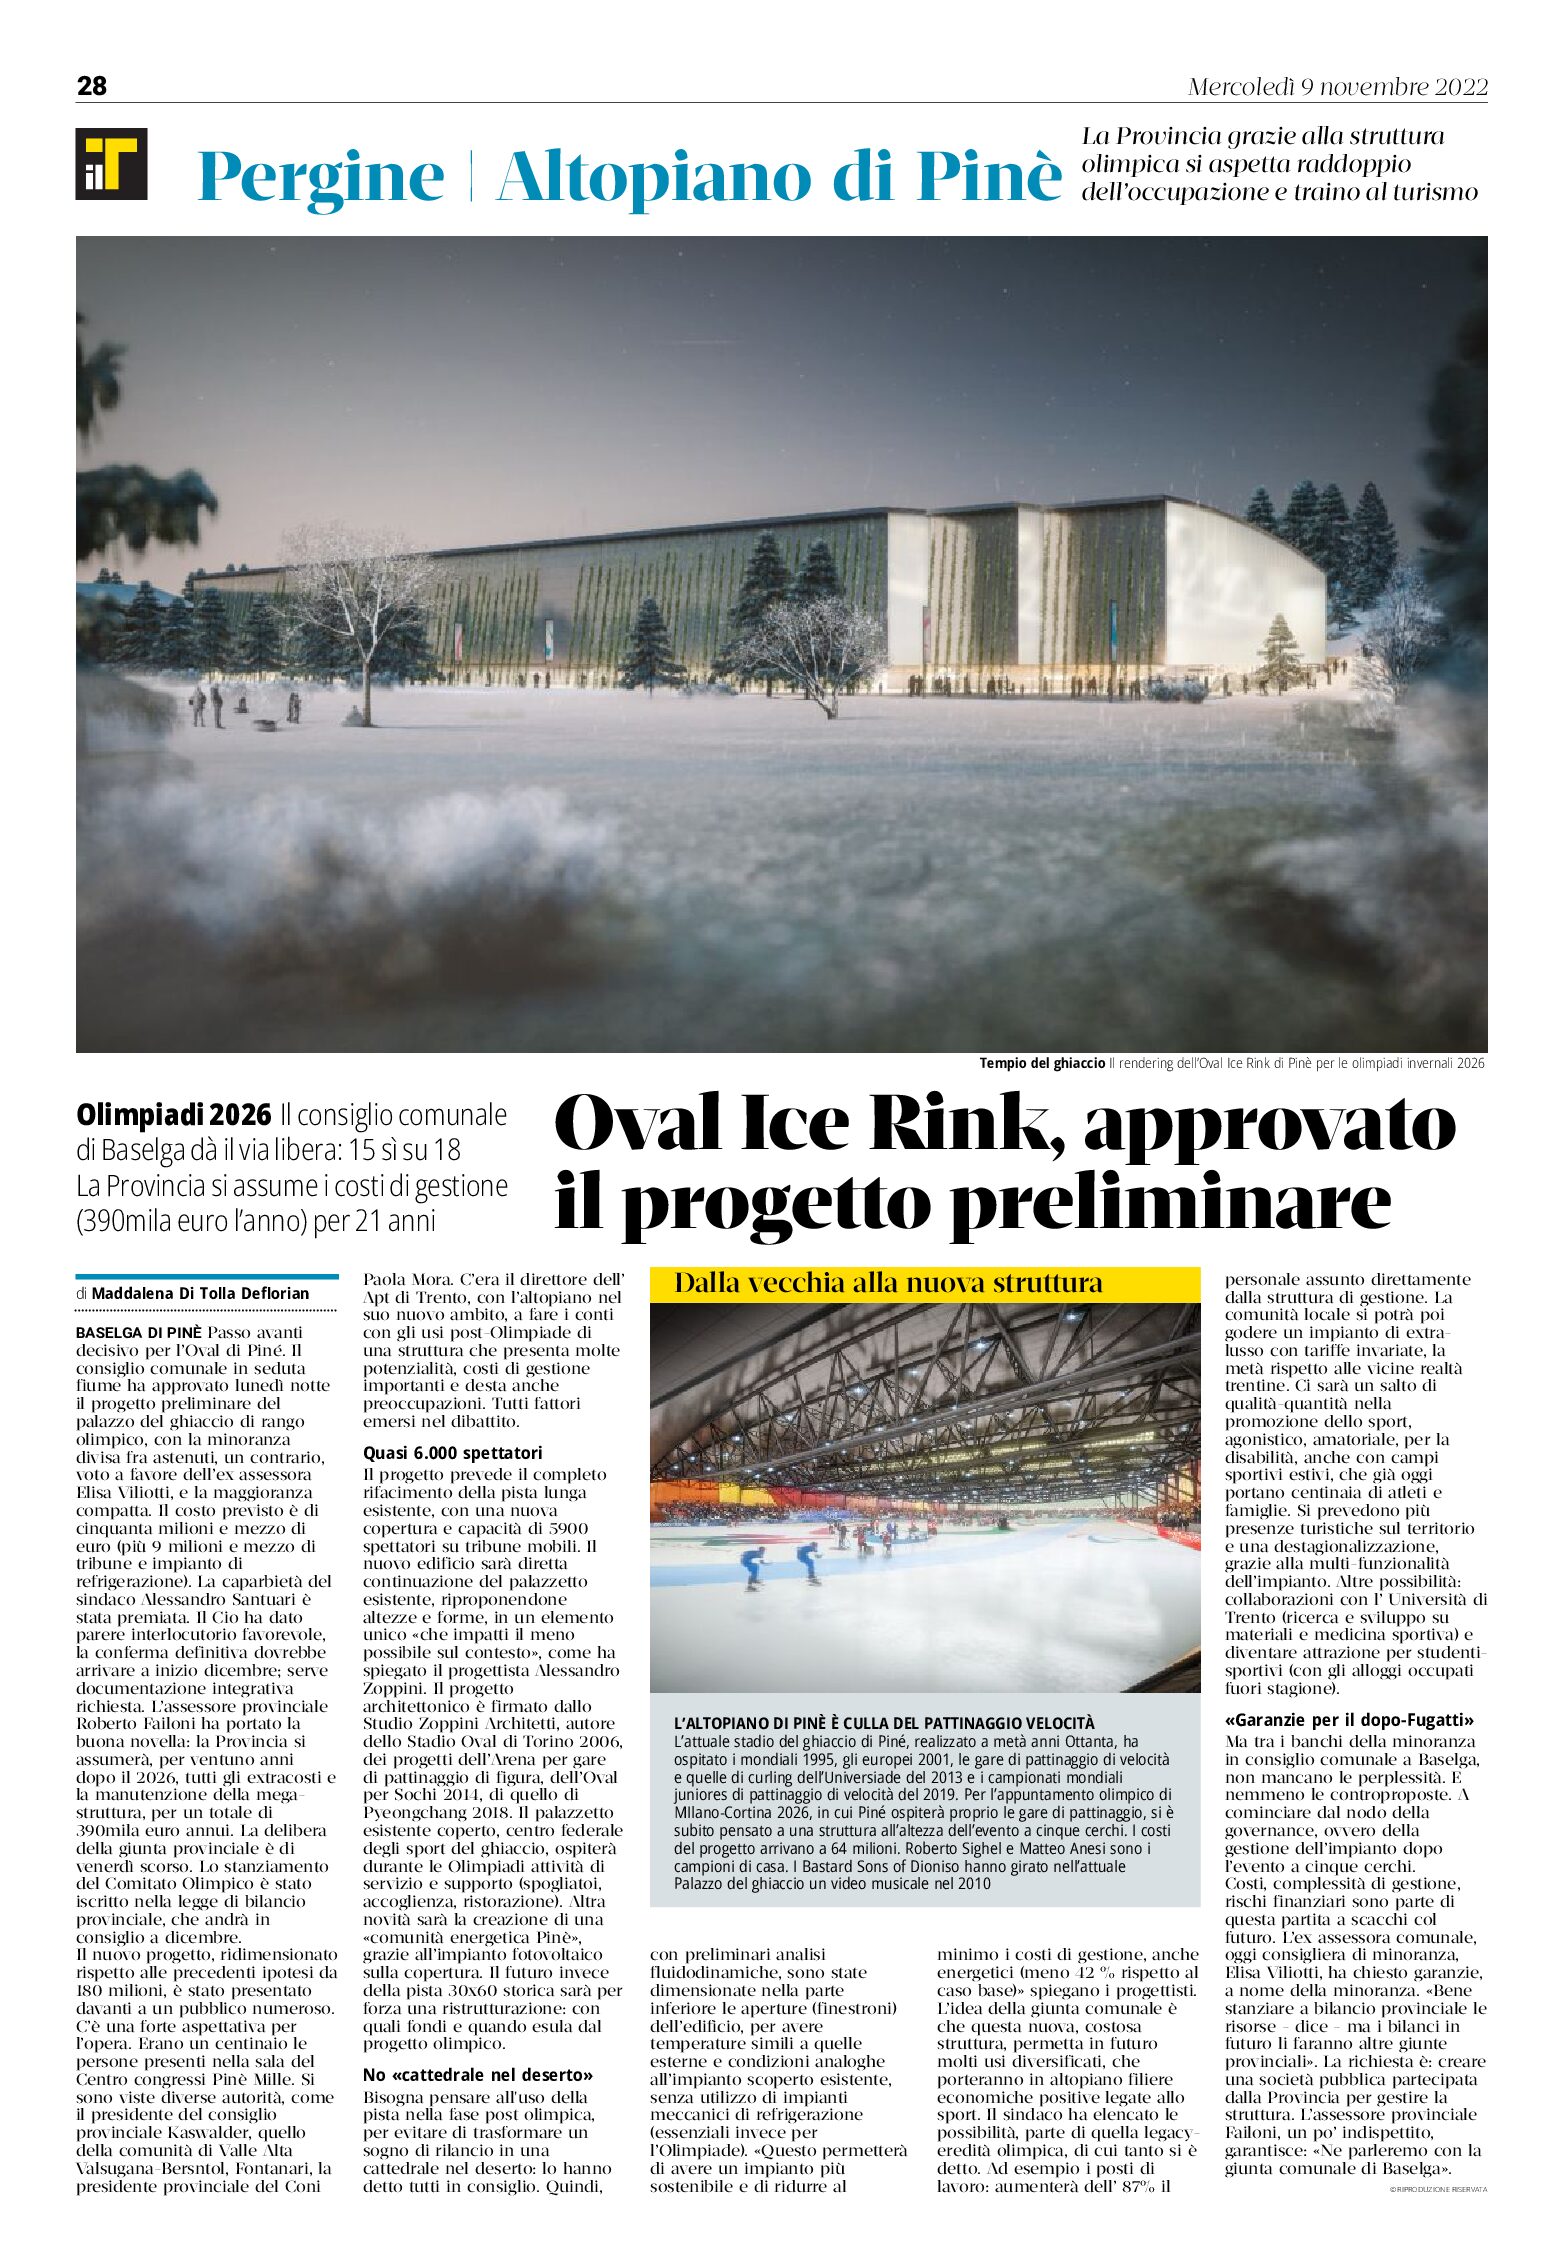 Baselga di Pinè: Oval Ice Rink, approvato il progetto preliminare